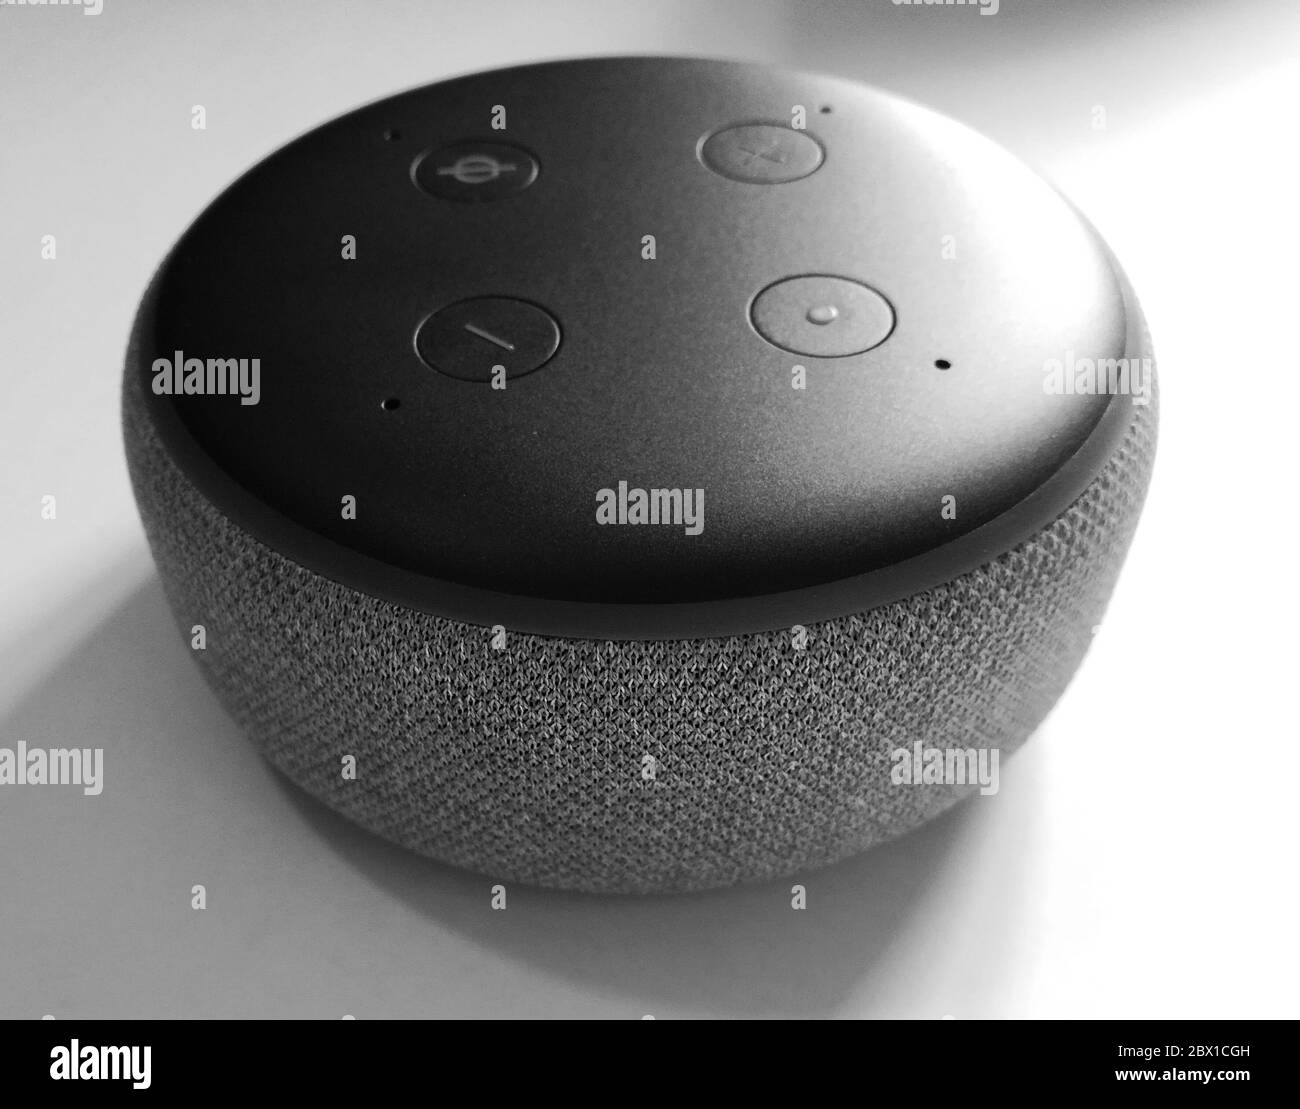 3ra Generación Del as Alexa Echo Dot Foto de archivo editorial -  Ilustración de sonido, altavoz: 129201953